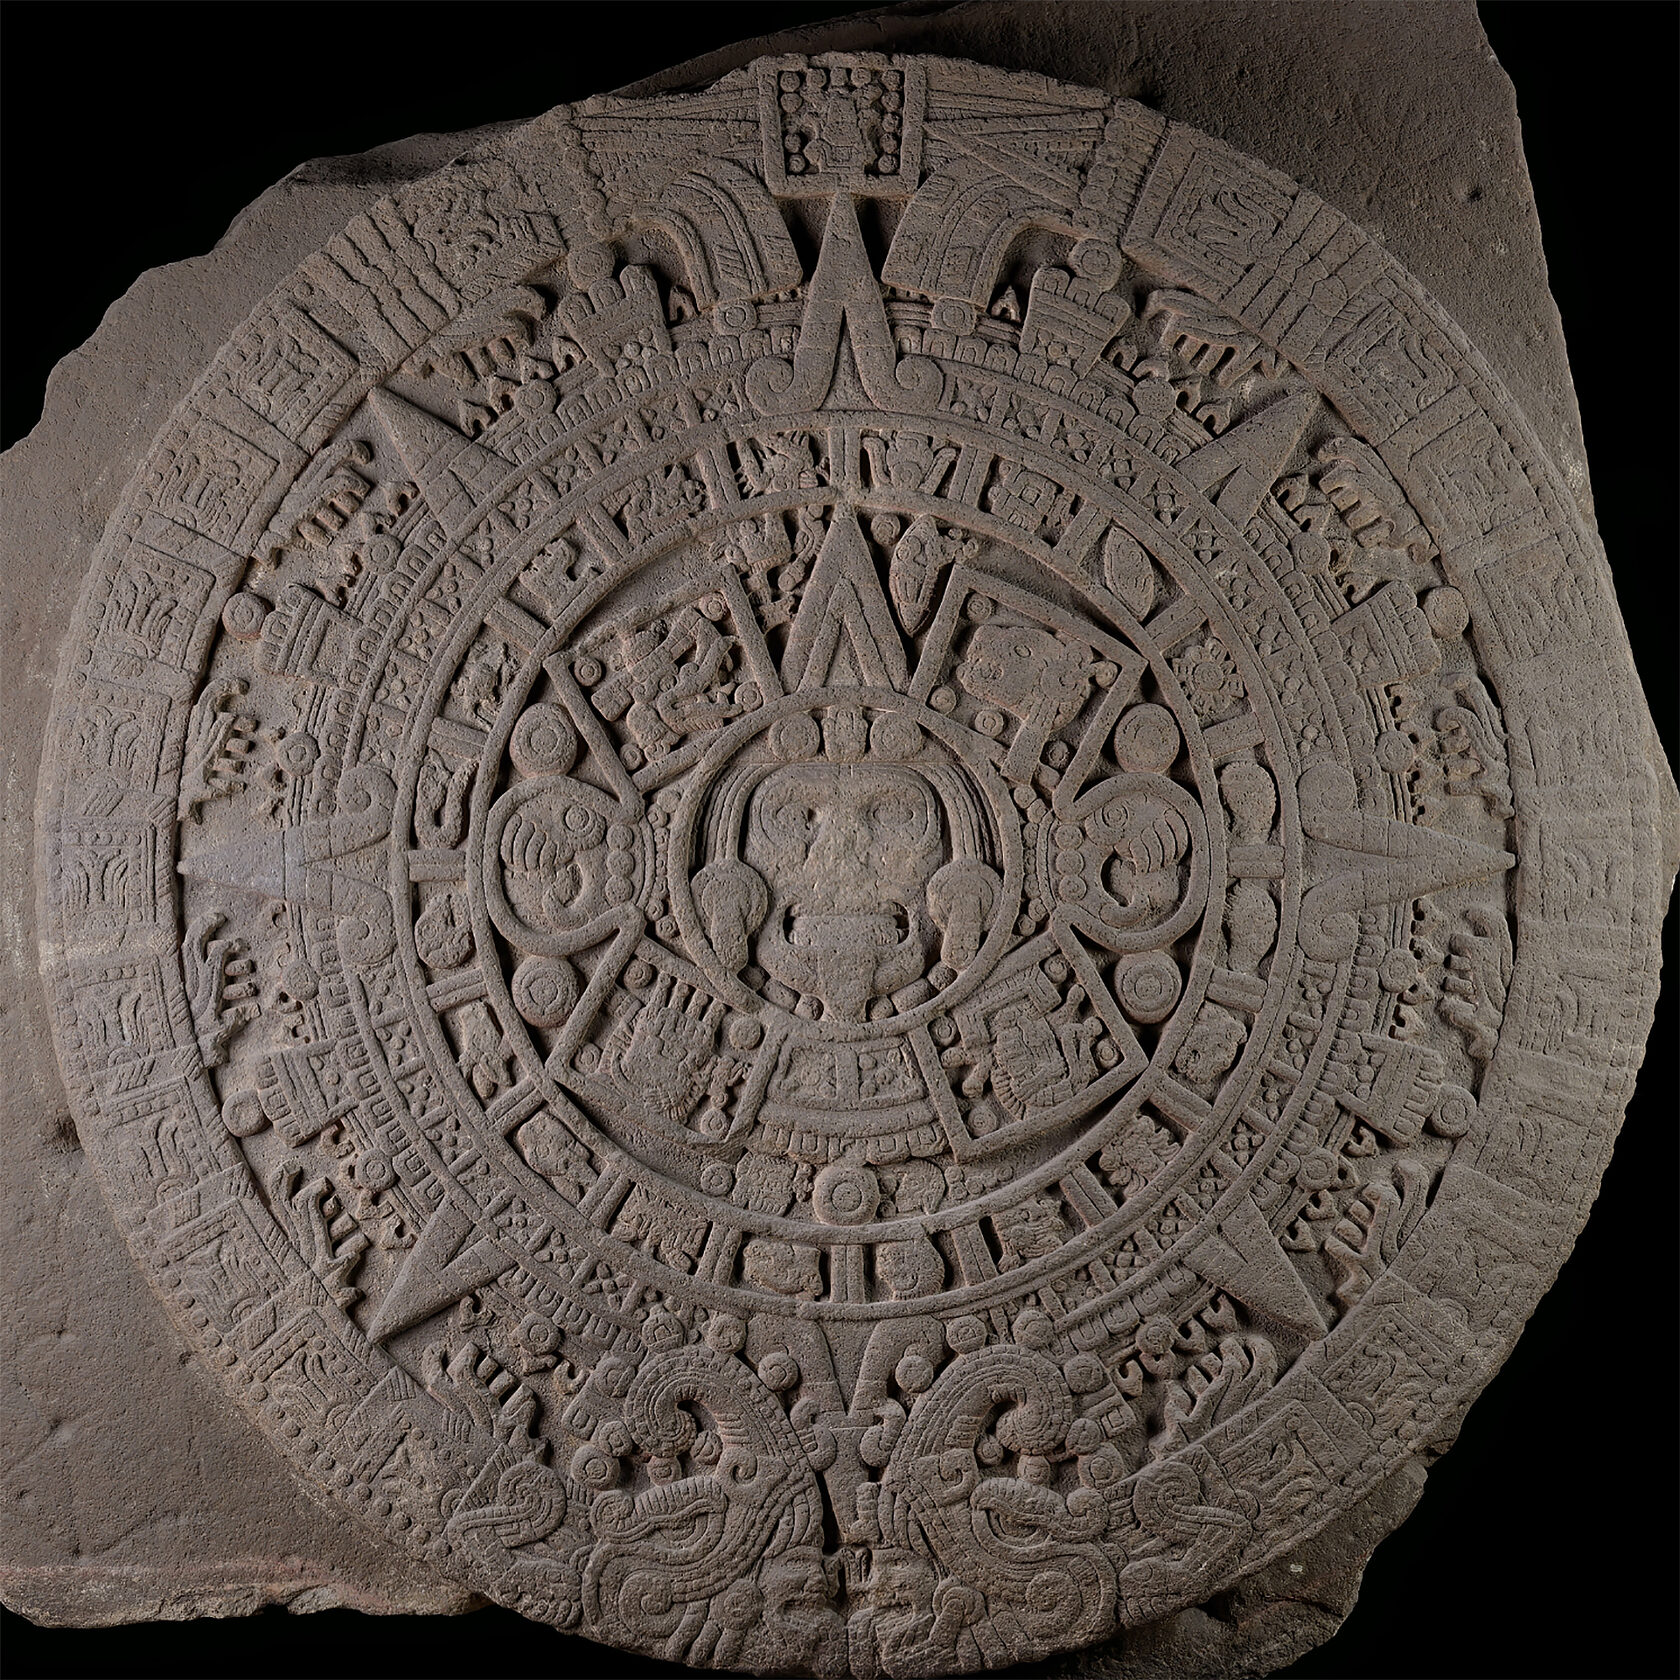 Камень солнца. Ацтеки (?), 1250-1500 гг. н.э. Коллекция Museo Nacional de Antropologia, Мехико.